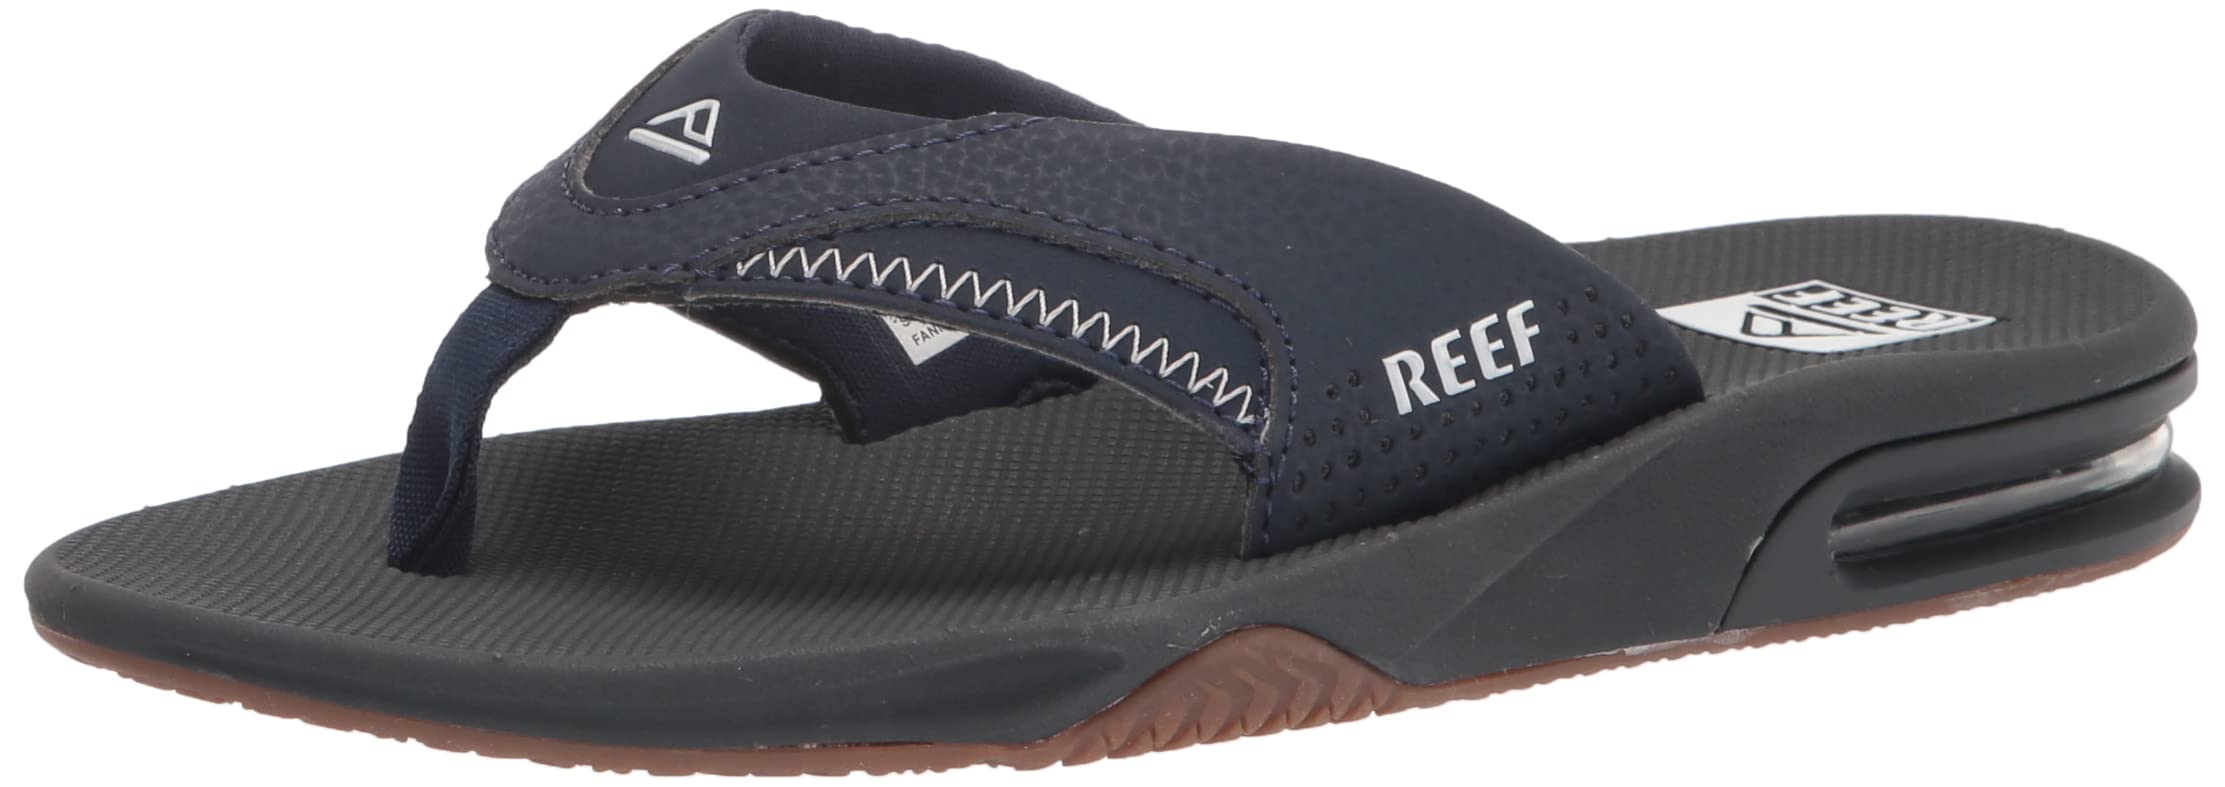 Reef Mens Fanning Sandal | Bottle Opener Flip Flop